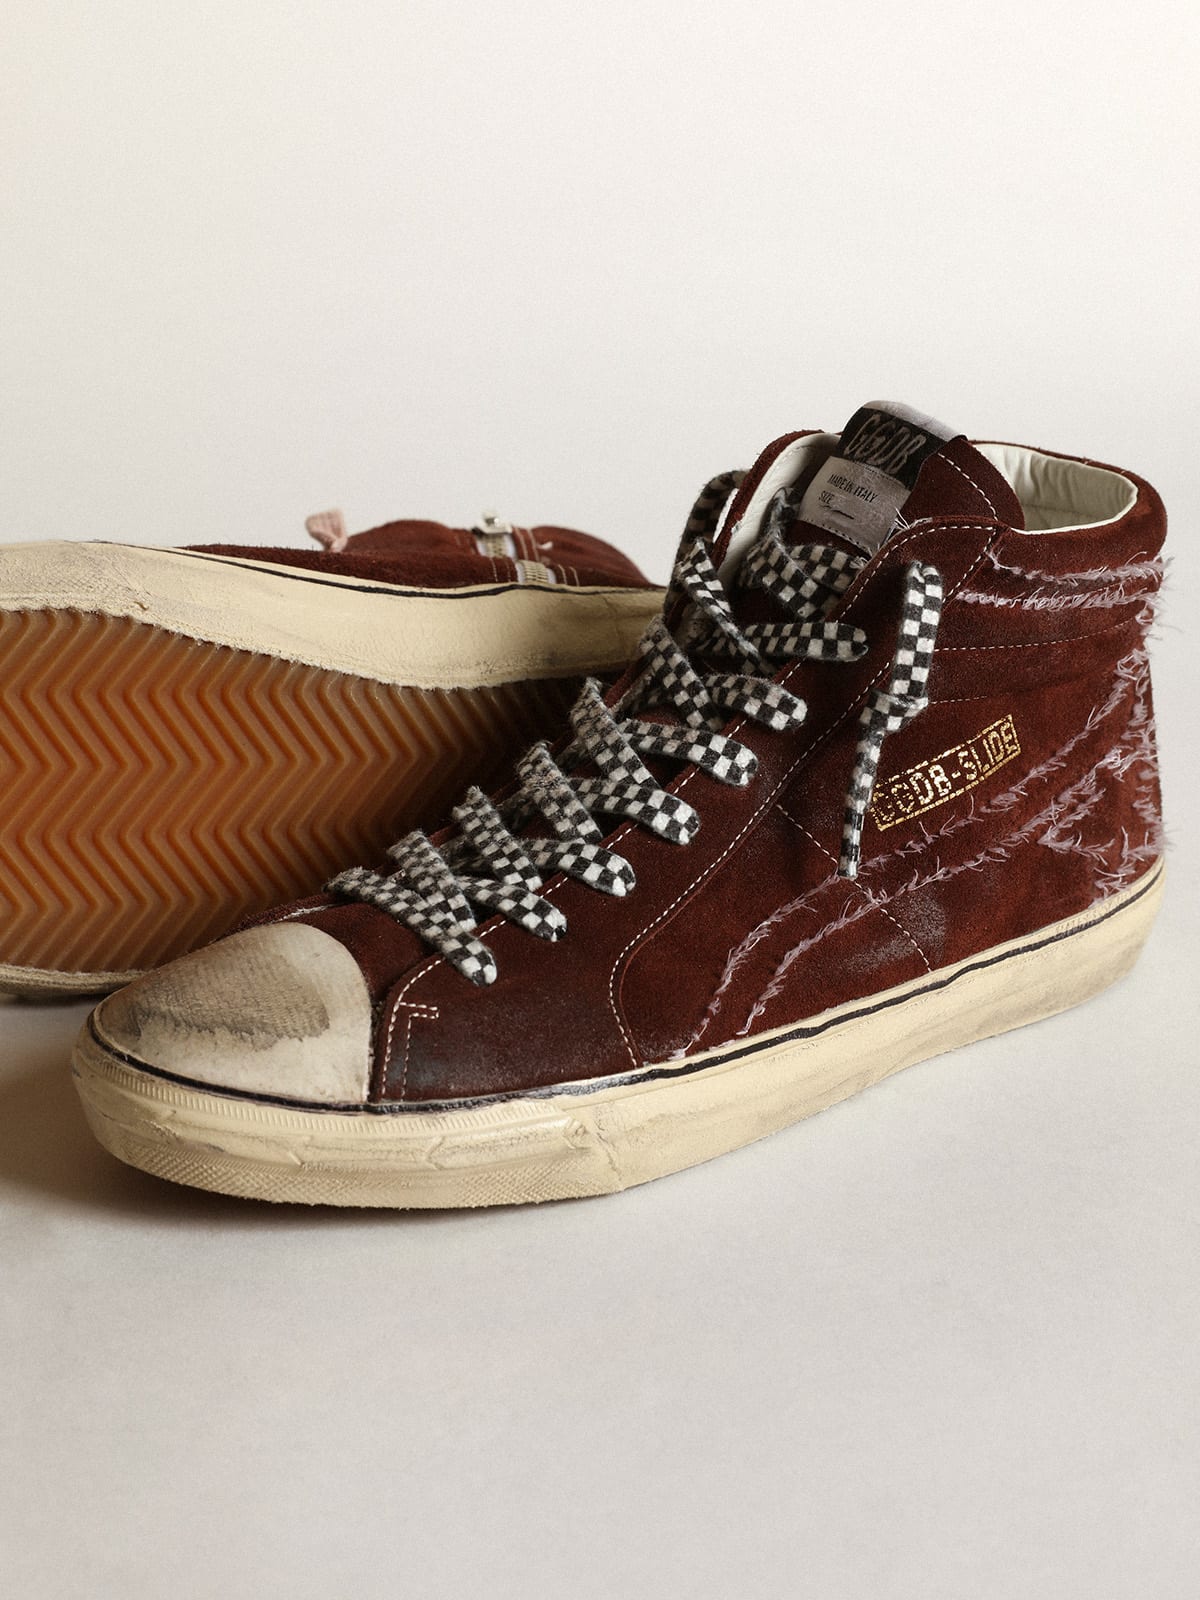 Golden Goose - Sneaker Slide in suede color cioccolato con stella e virgola con impunture bianche in 